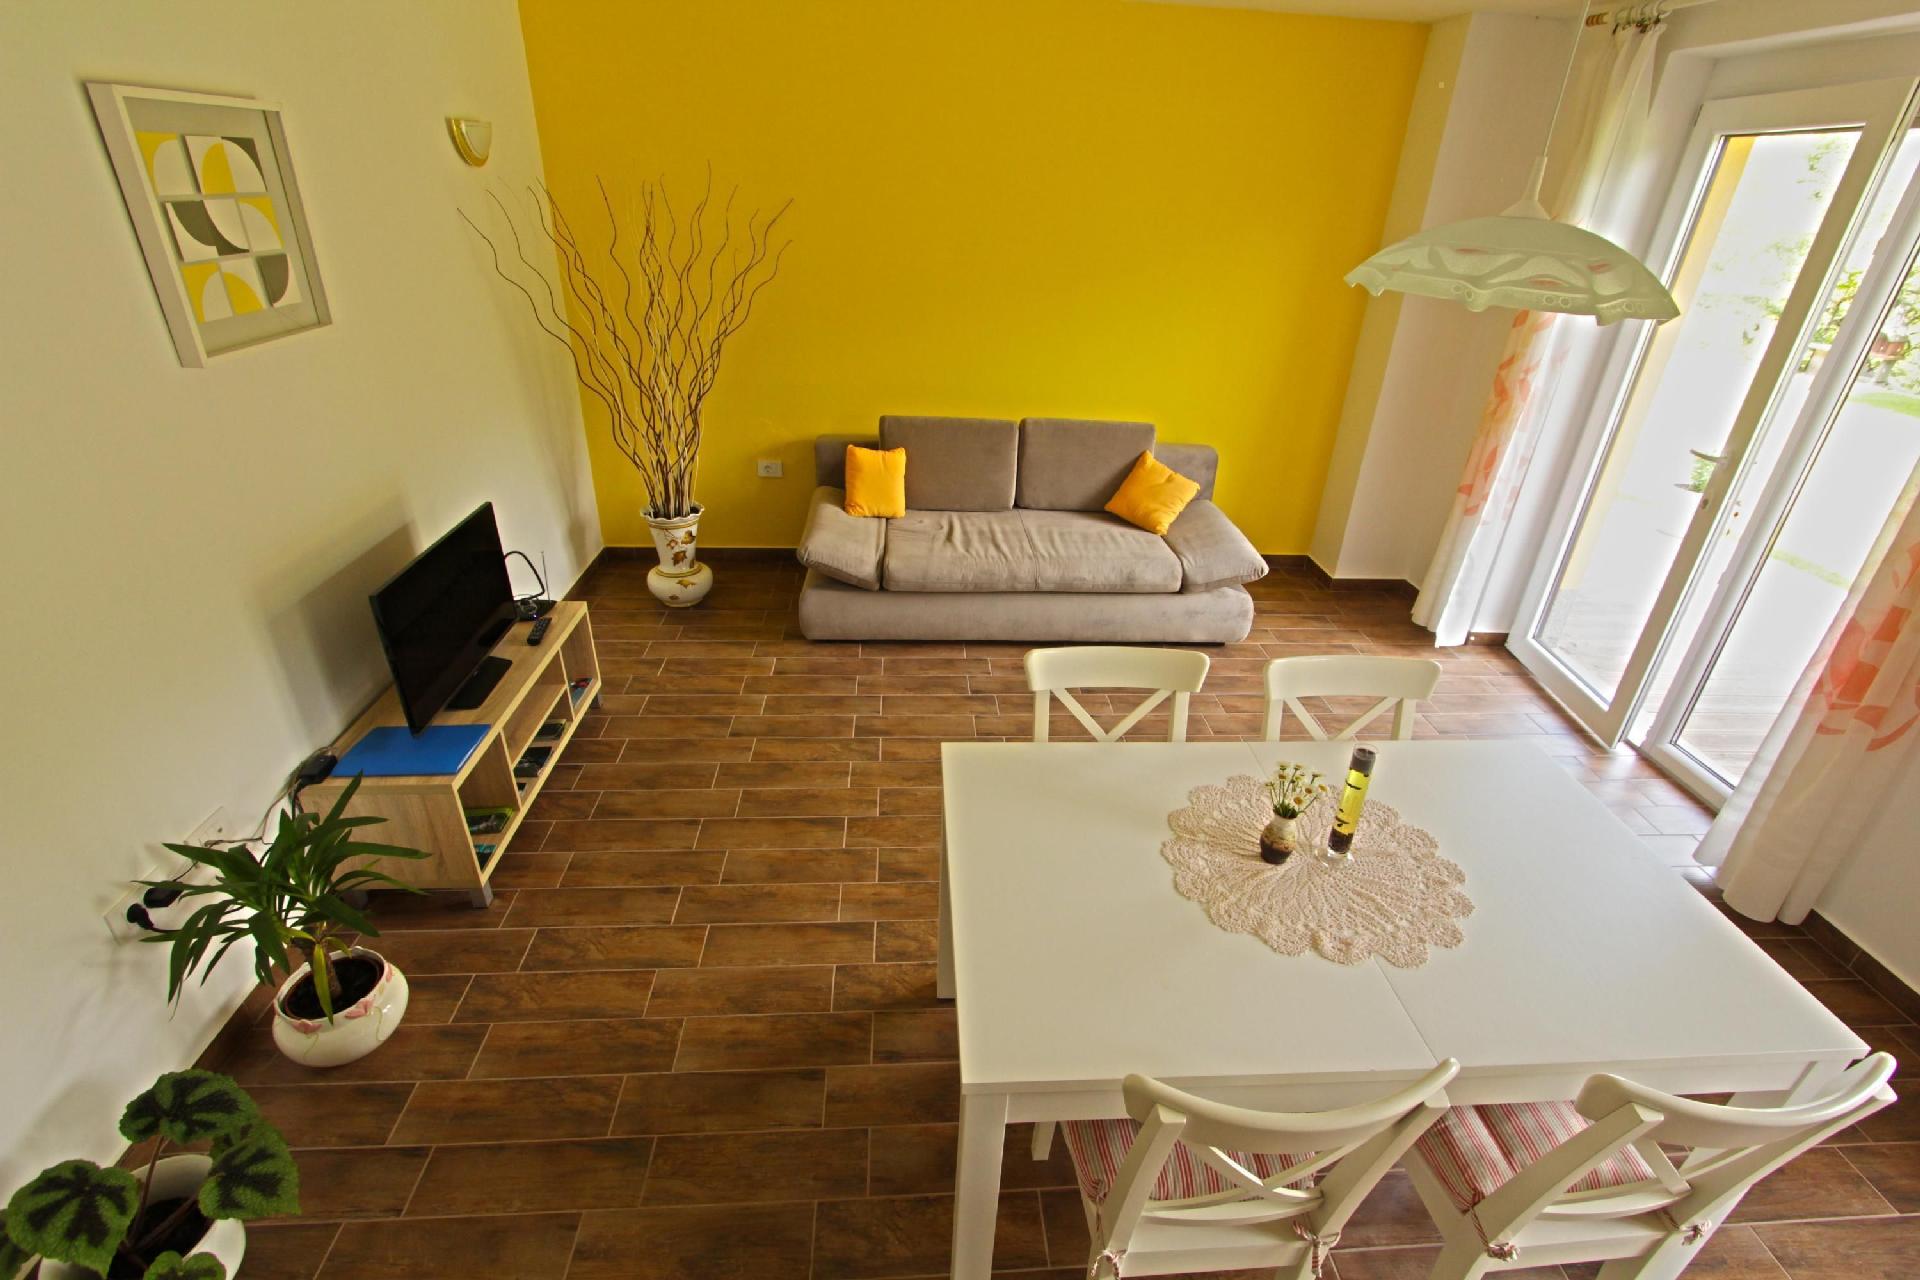 Appartement in Kamno mit Gemeinsamer Terrasse Ferienhaus in Europa